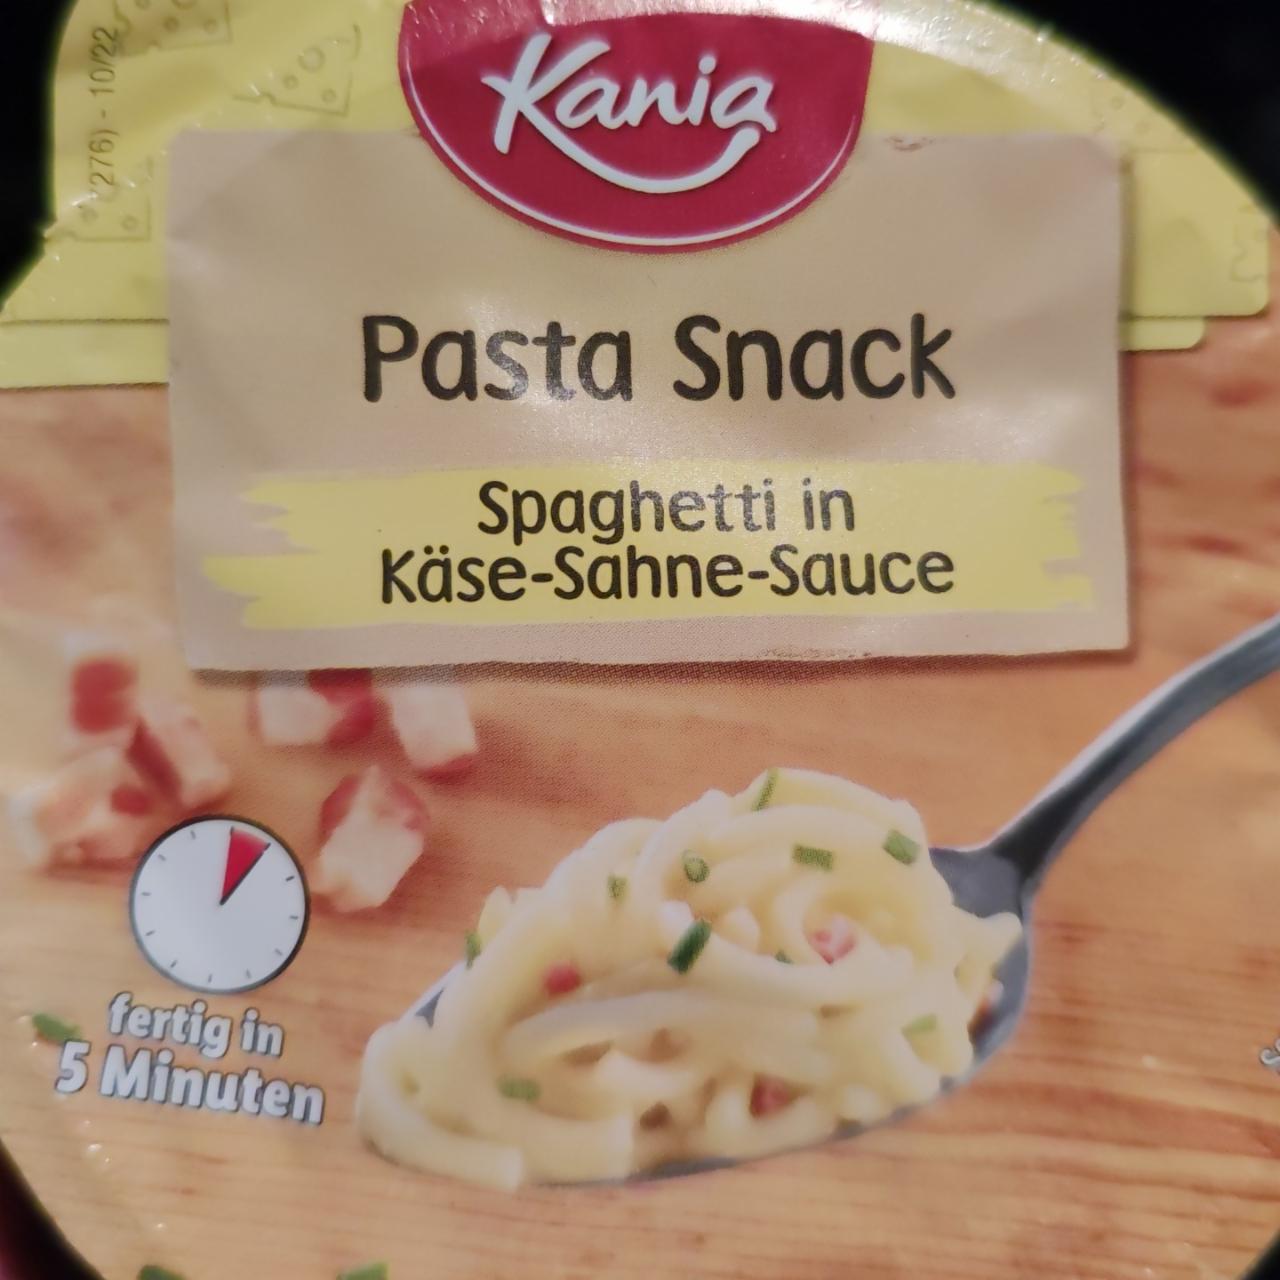 Fotografie - pasta snack spaghetti in kase-sahne-sauce Kania